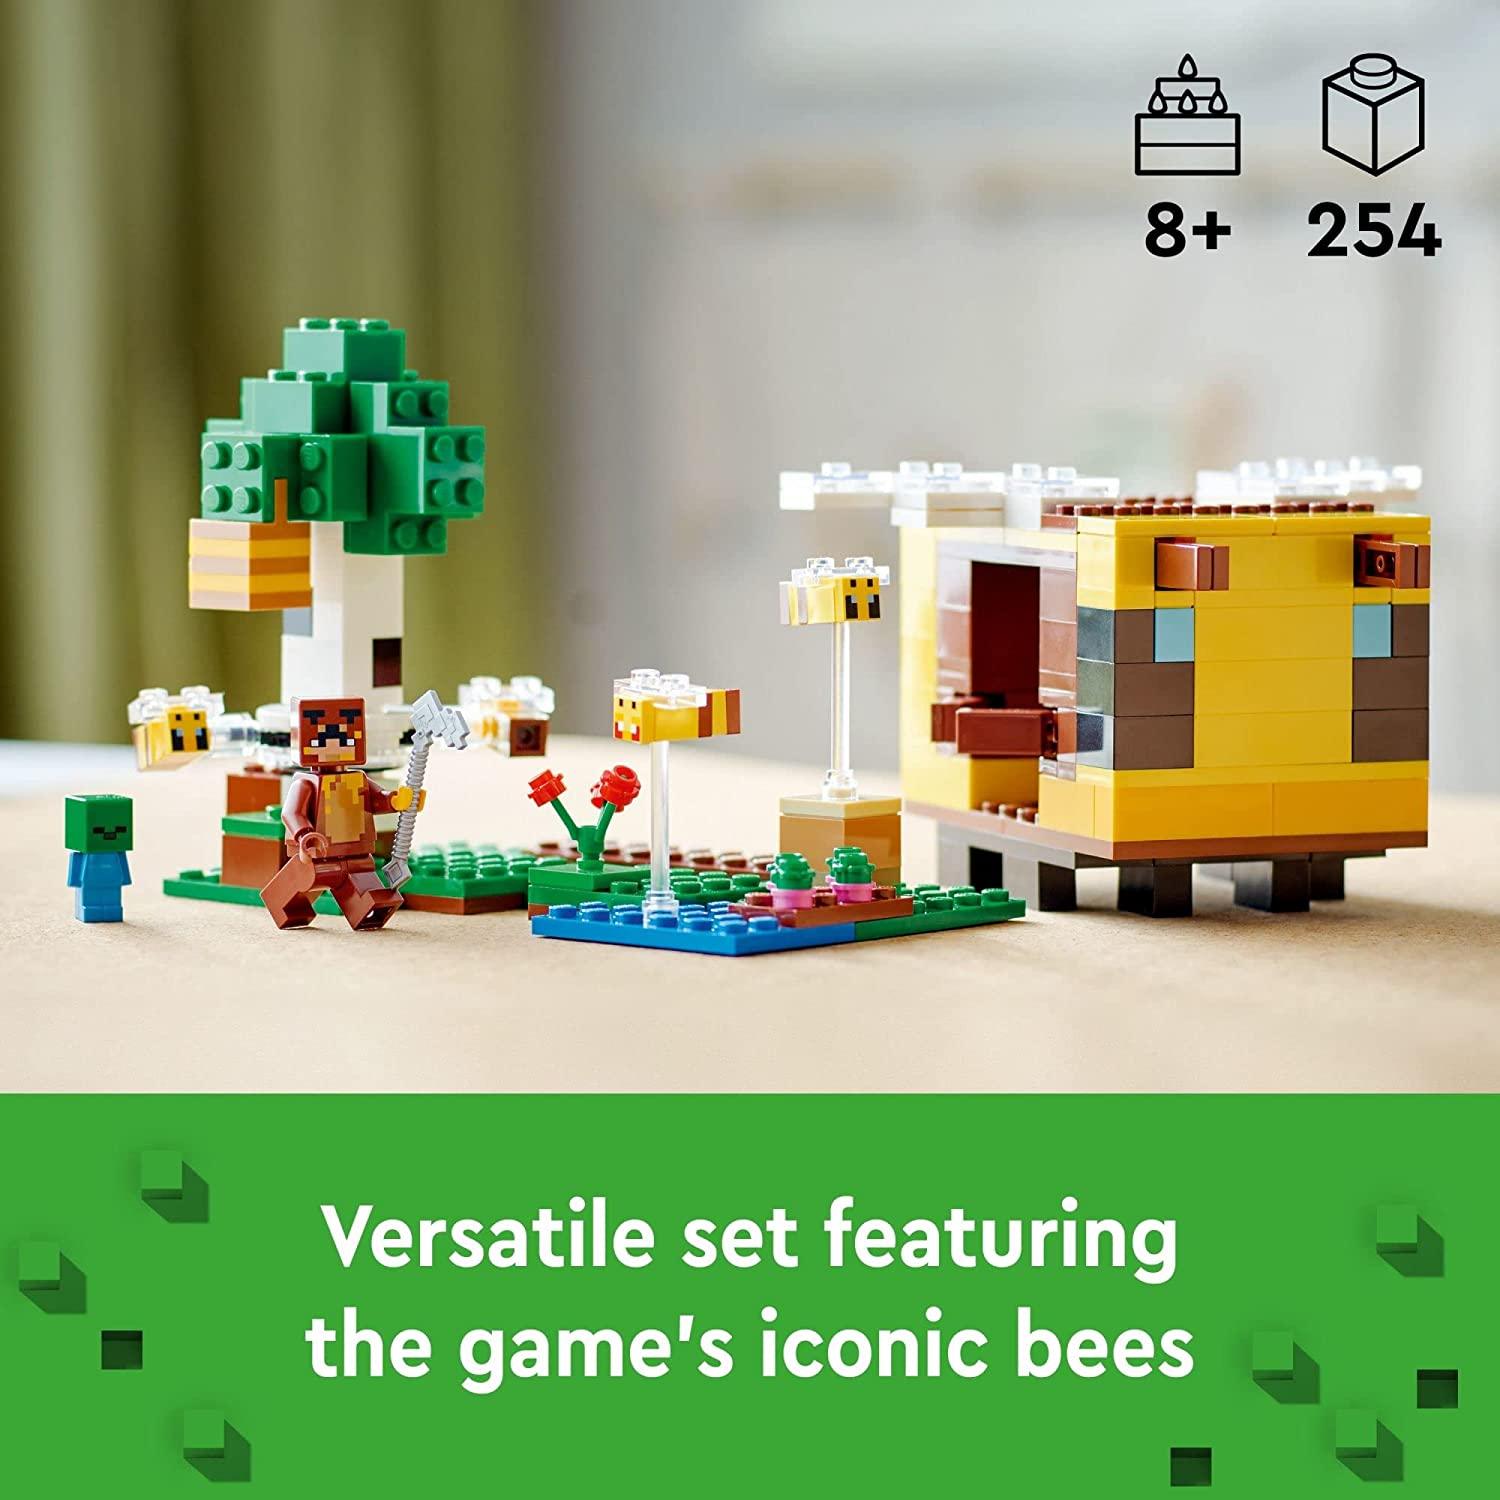 LEGO 21241 Minecraft The Bee Cottage ، لعبة بناء مع منزل قابل للبناء ، مزرعة ، زومبي للأطفال وشخصيات حيوانات